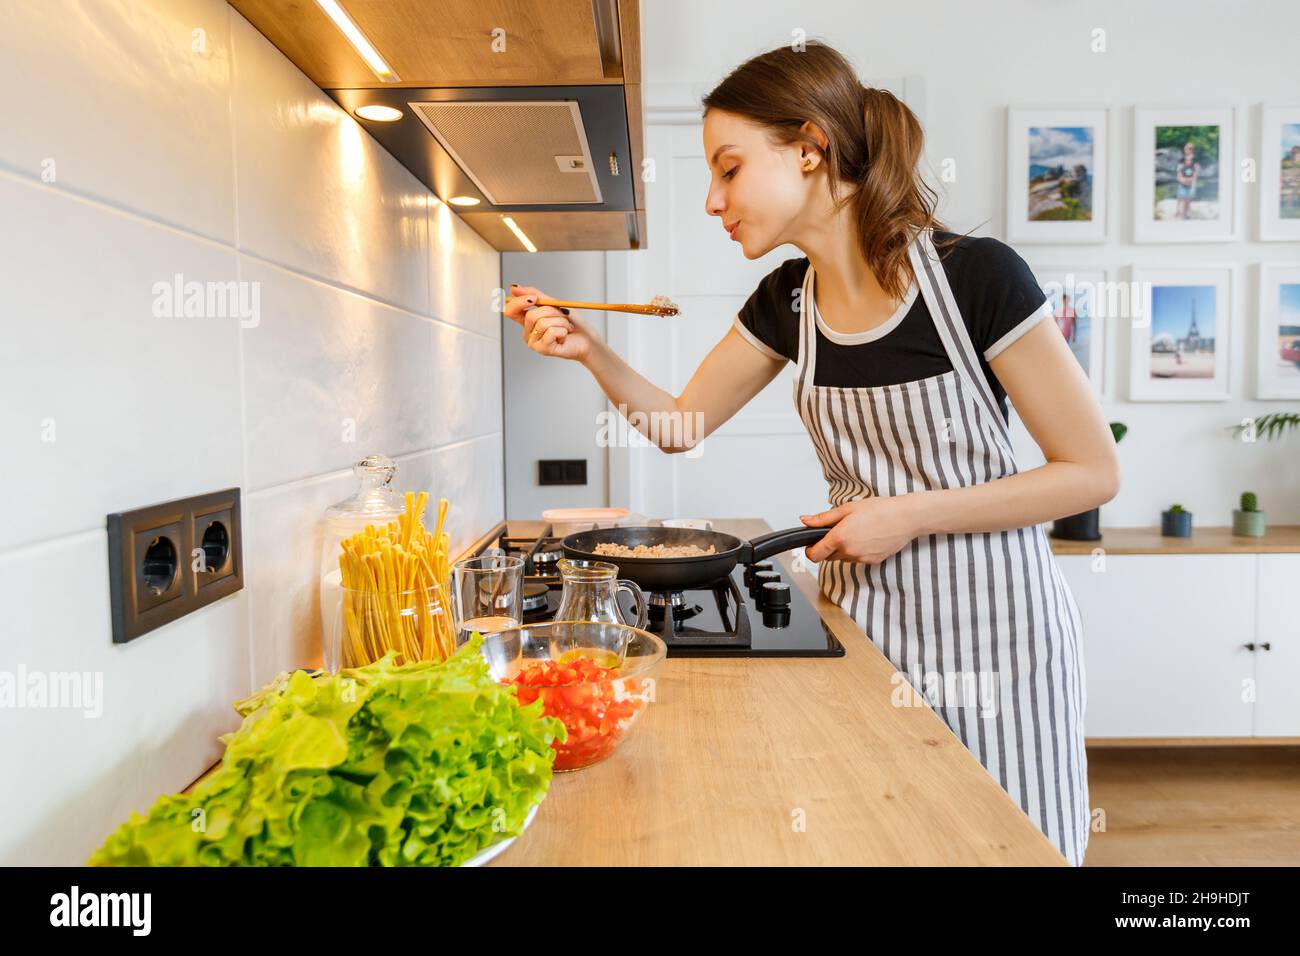 Junge Frau im Vorfeld Kochen gesunde Lebensmittel in der modernen Küche zu Hause. Zubereitung der Mahlzeit mit einer Pfanne auf dem Gasherd. Konzept des häuslichen Lebensstils, glücklich ho Stockfoto